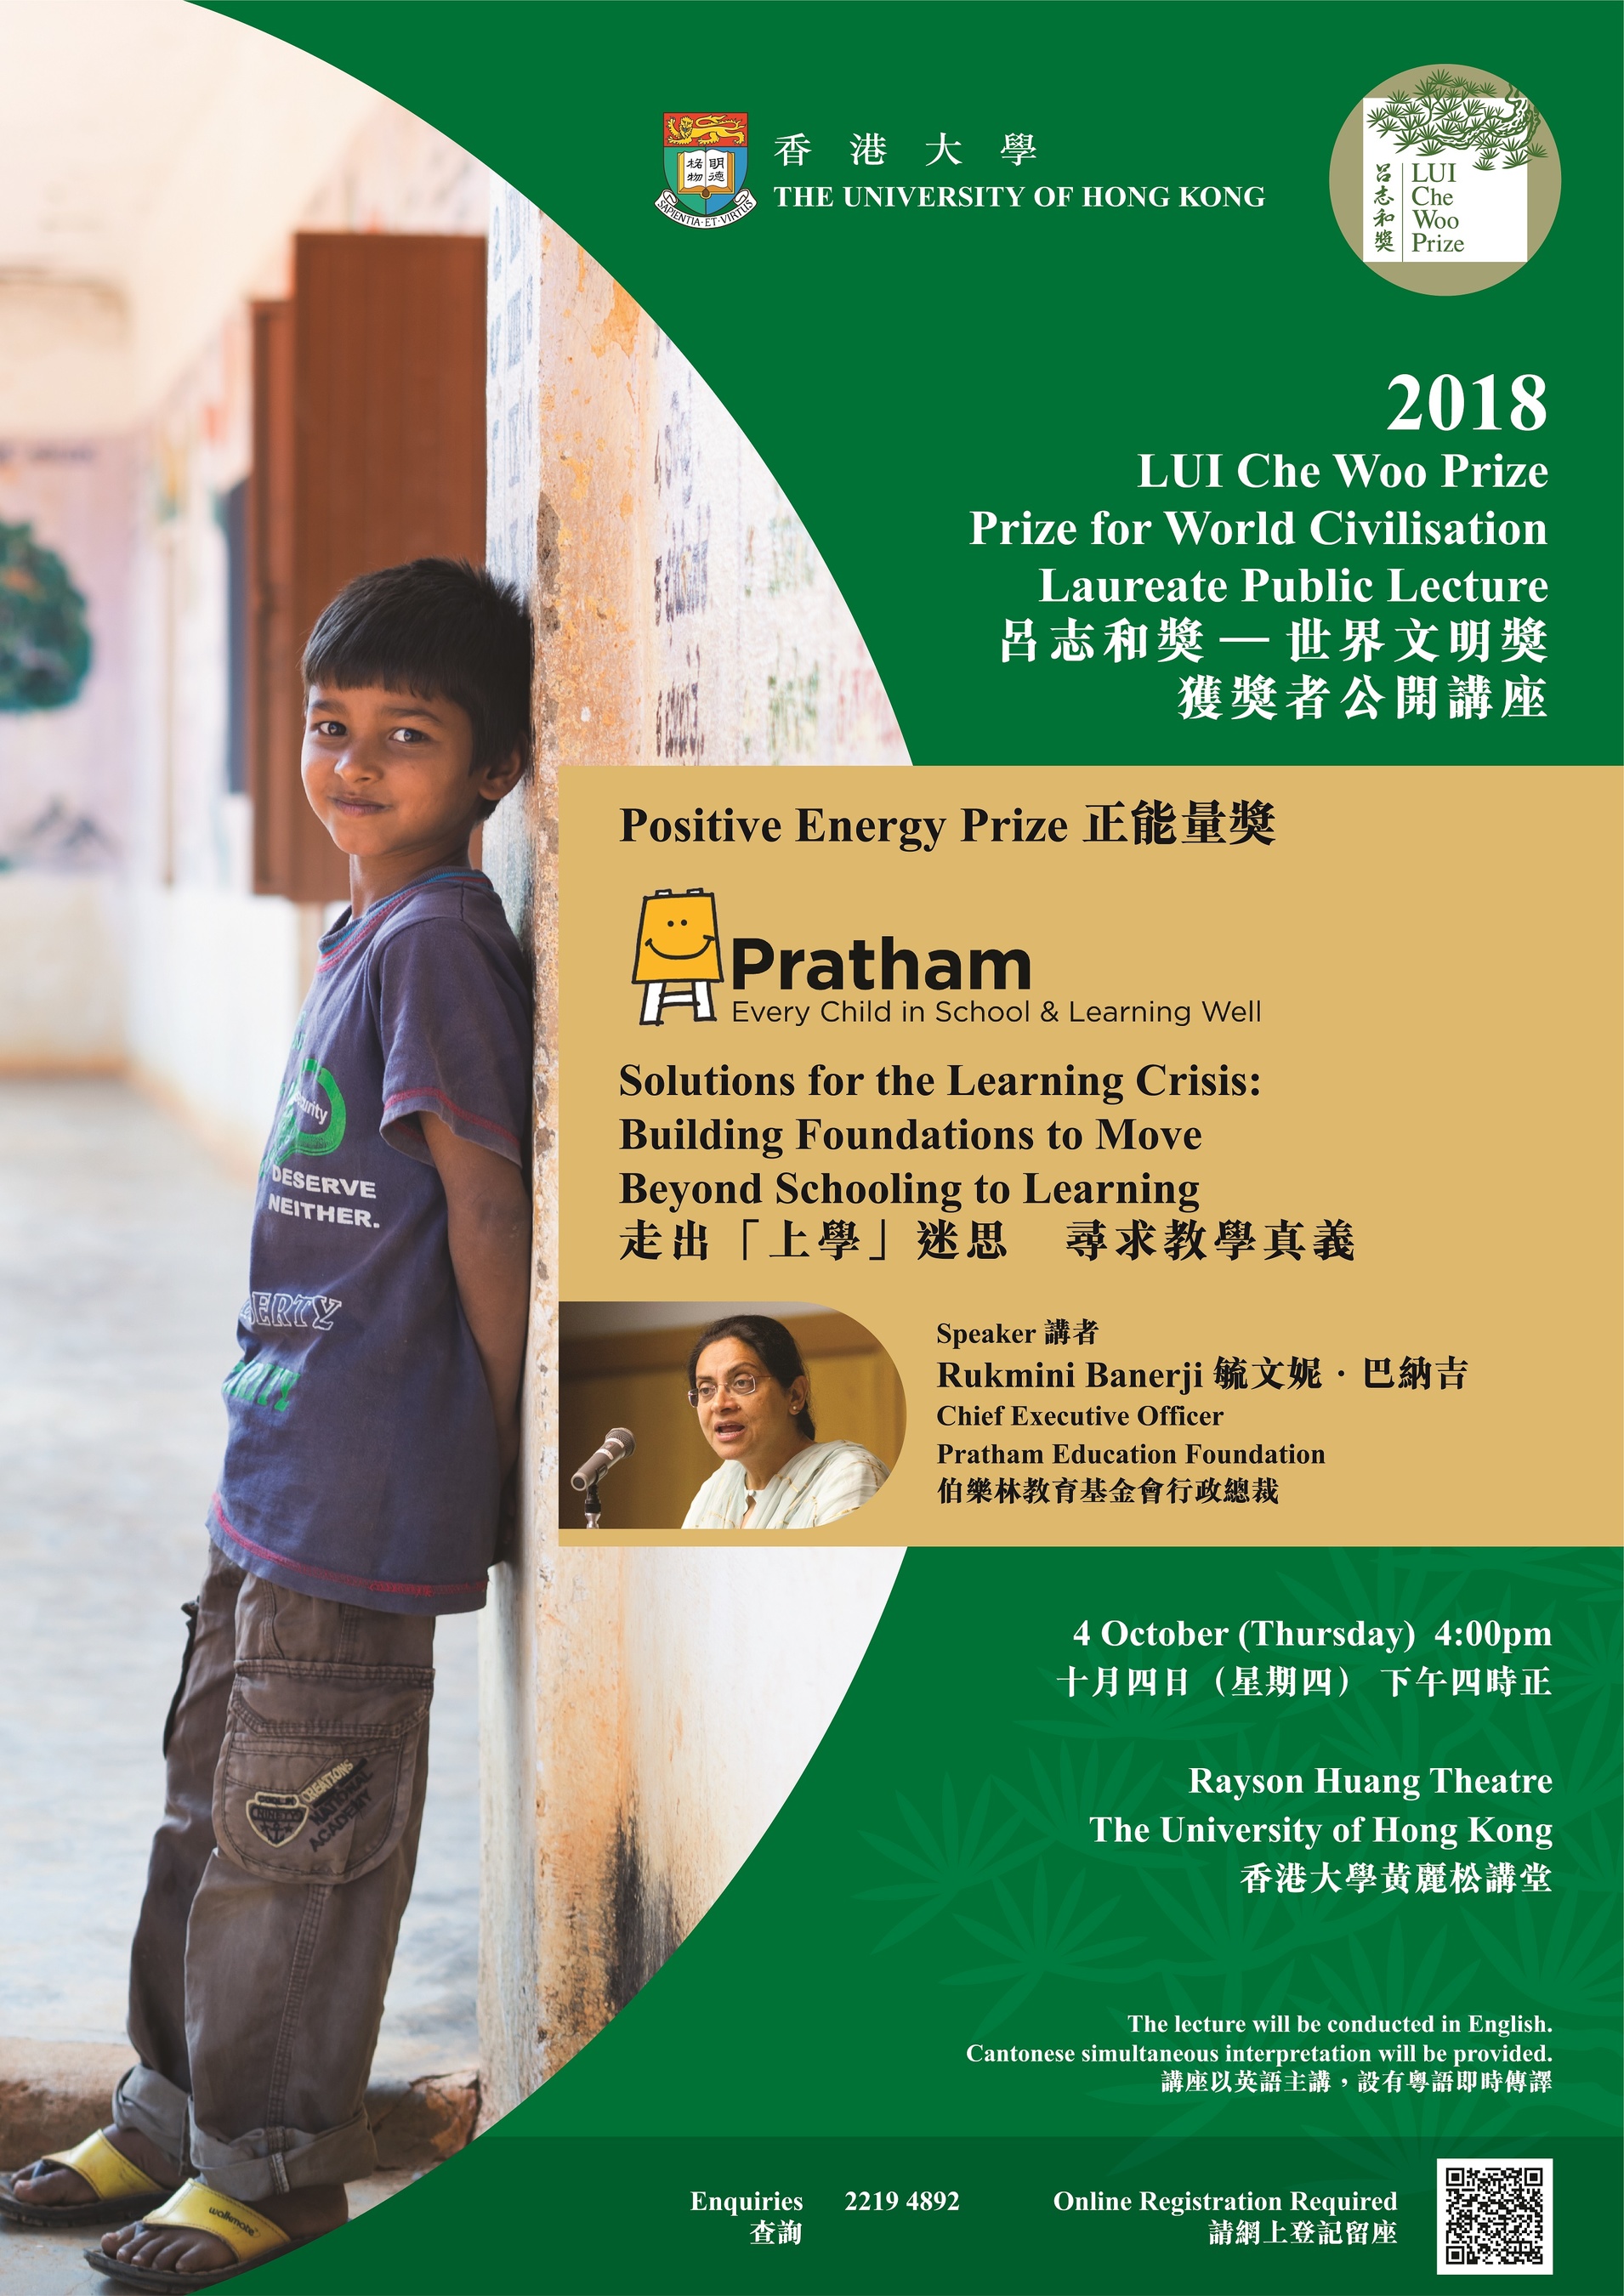 LUI Che Woo Prize - Prize for World Civilisation 2018 Laureate Public Lecture